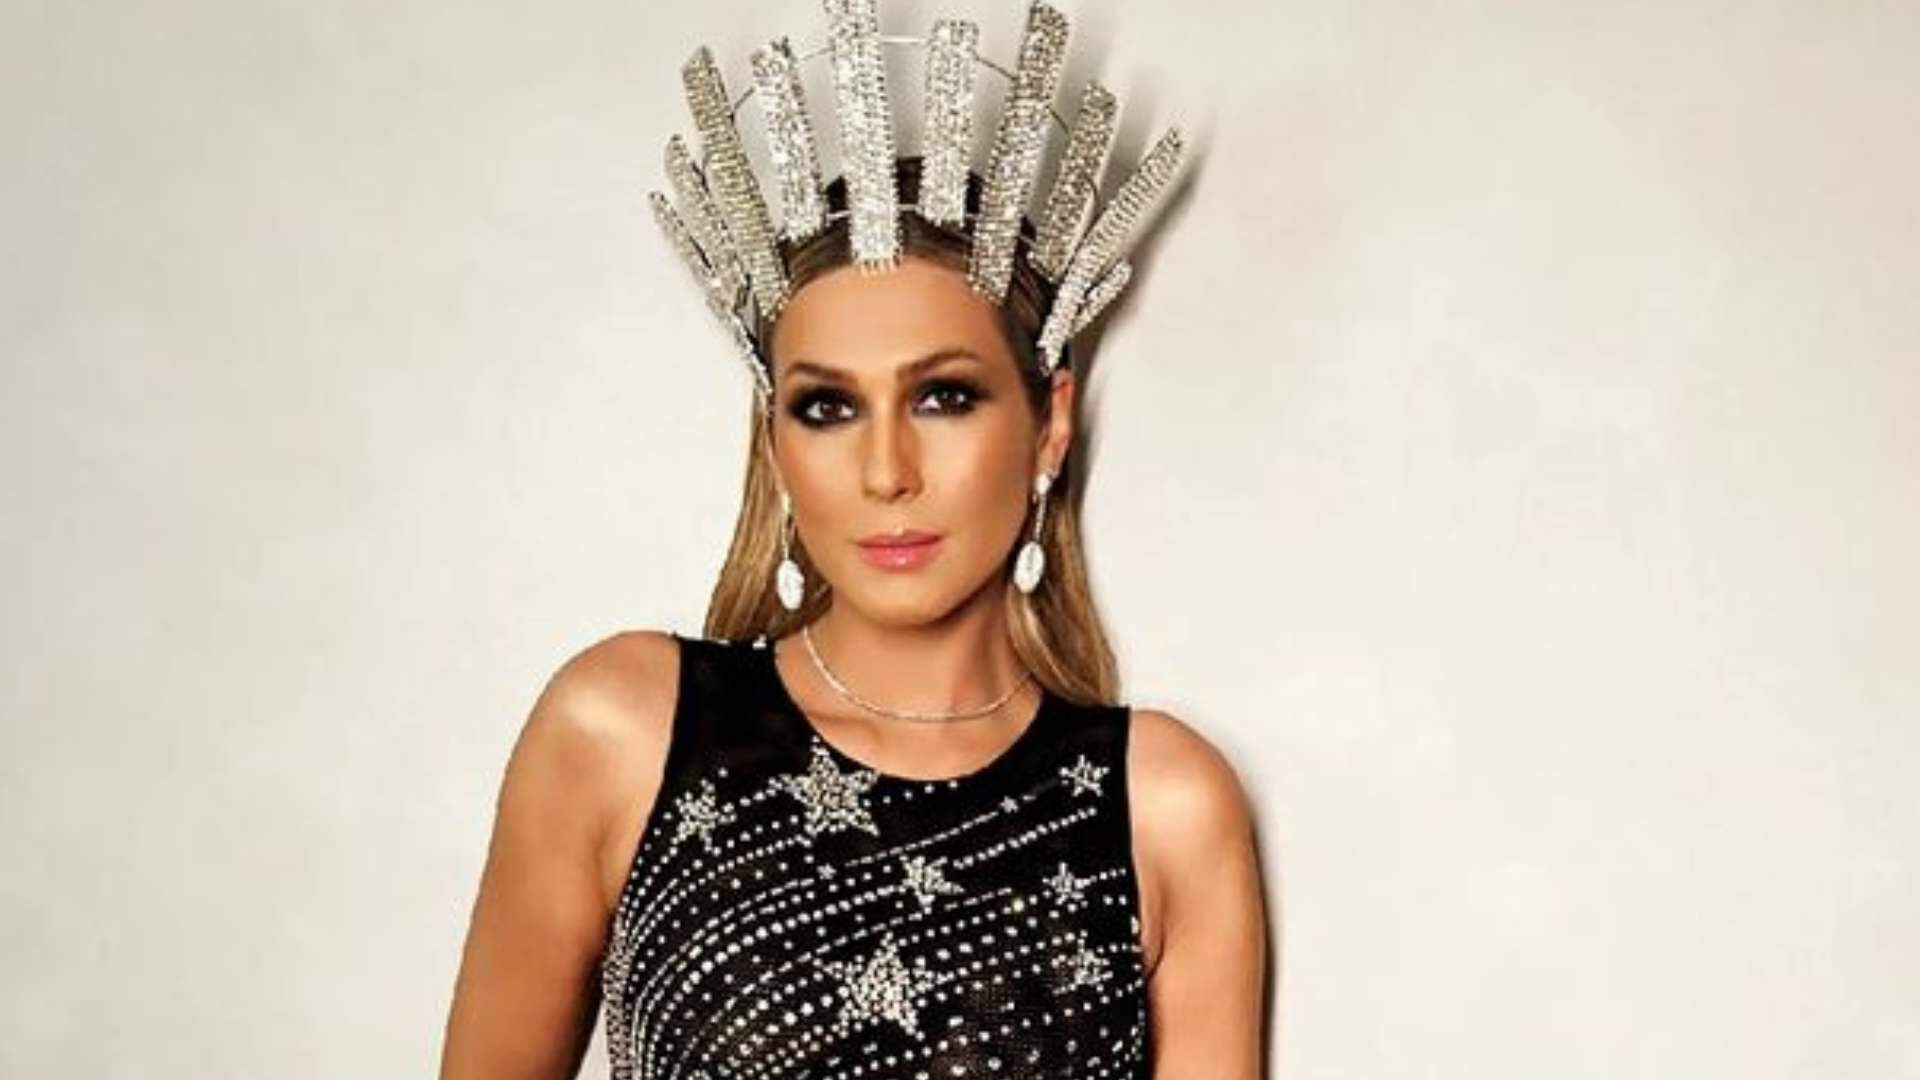 Lívia Andrade deixa vestido aberto demais e zoom revela tabaca bronzeada: “Carnaval começou” - Metropolitana FM